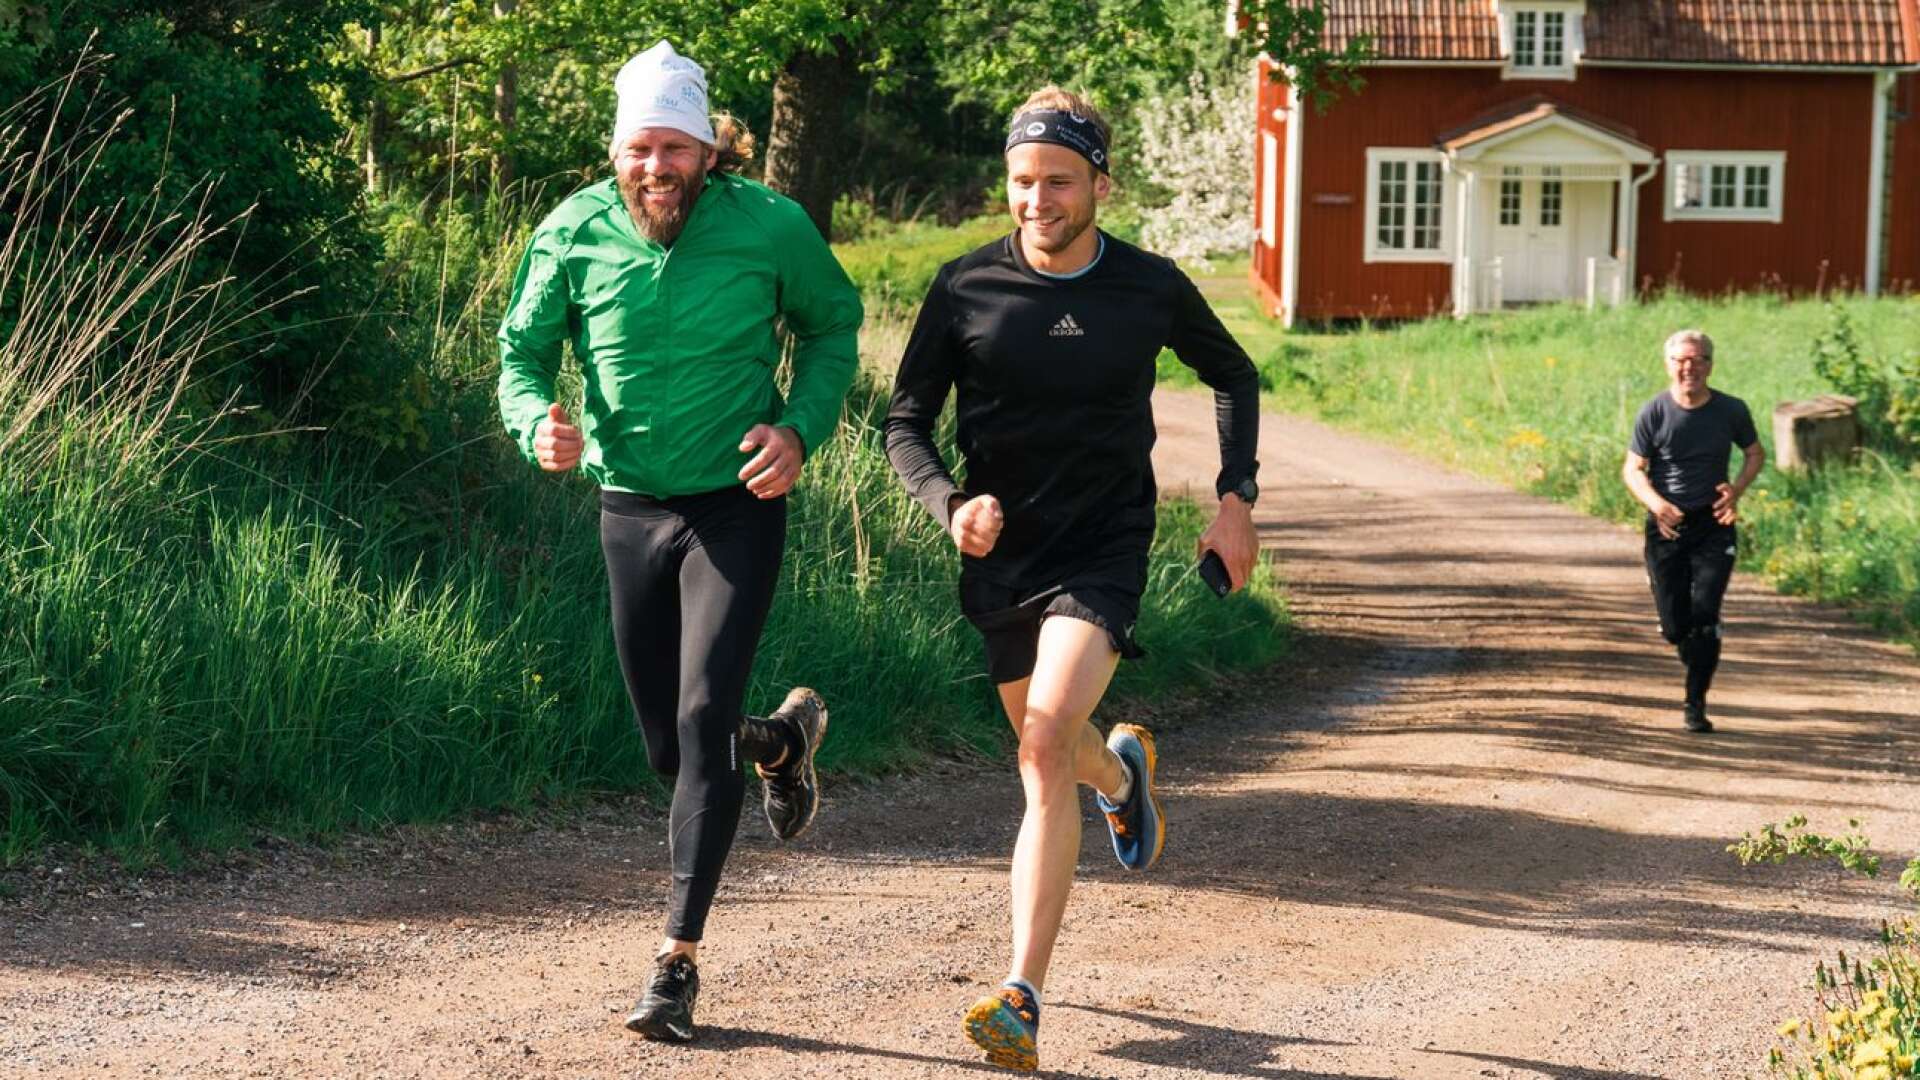 Fredrik Häggmark laddar för sin sista (?) triathlon-tävling, den första på hemmaplan. På bilden syns två andra som varit drivande i projektet, Magnus Hedlund (grönt) och Per-Åke Larsson (bakgrunden).